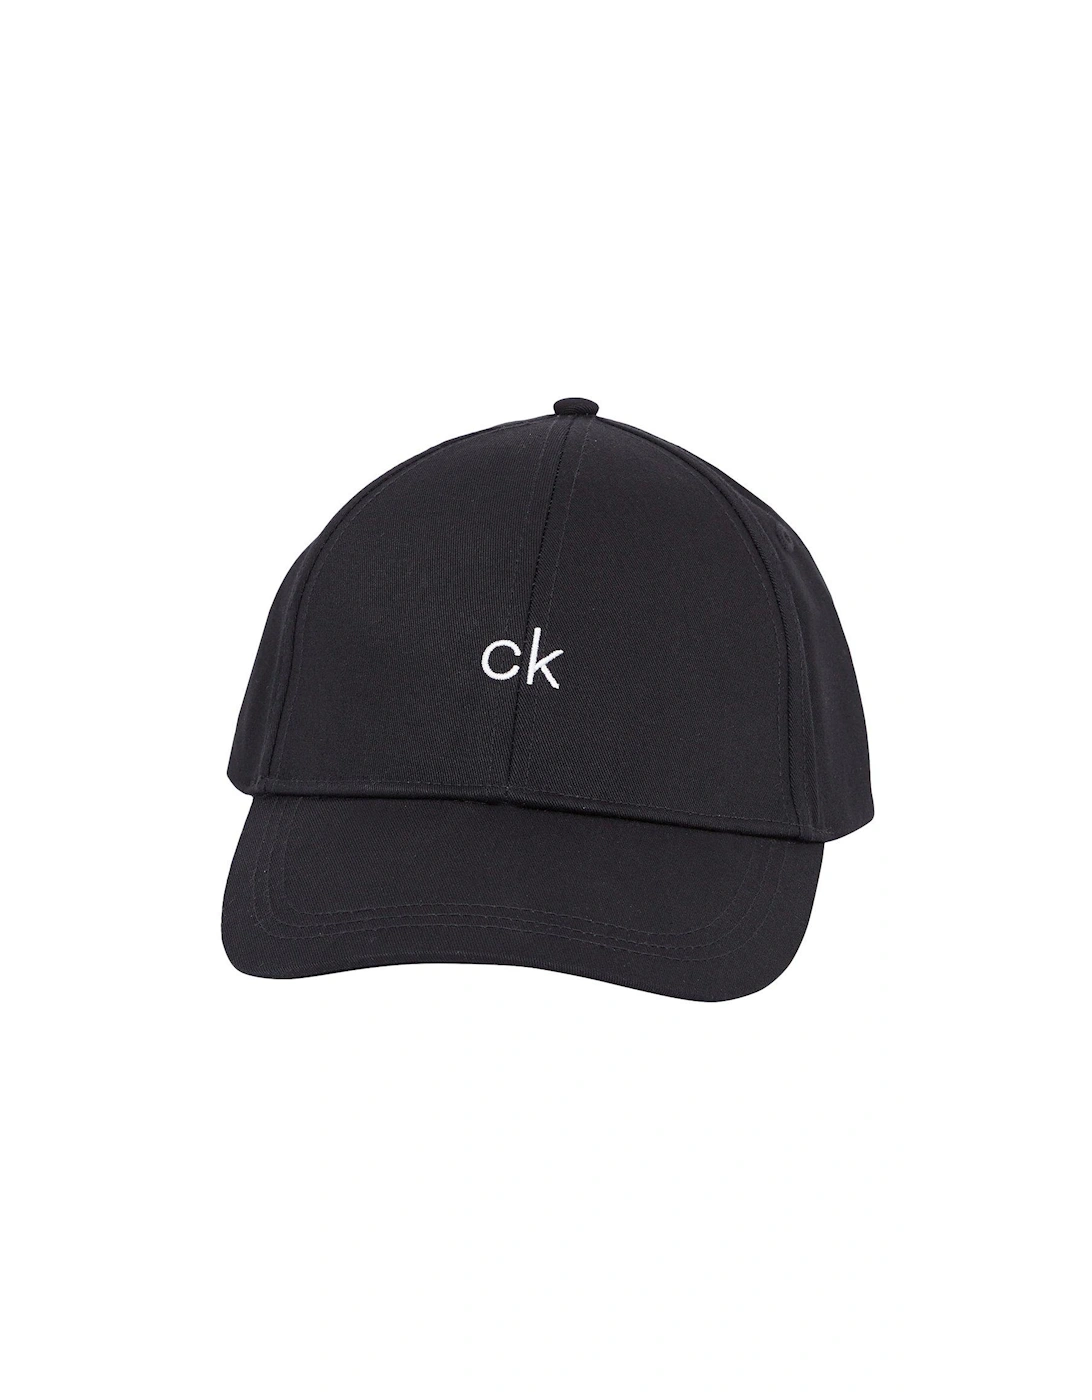 Ck Center Cap - Black, 3 of 2